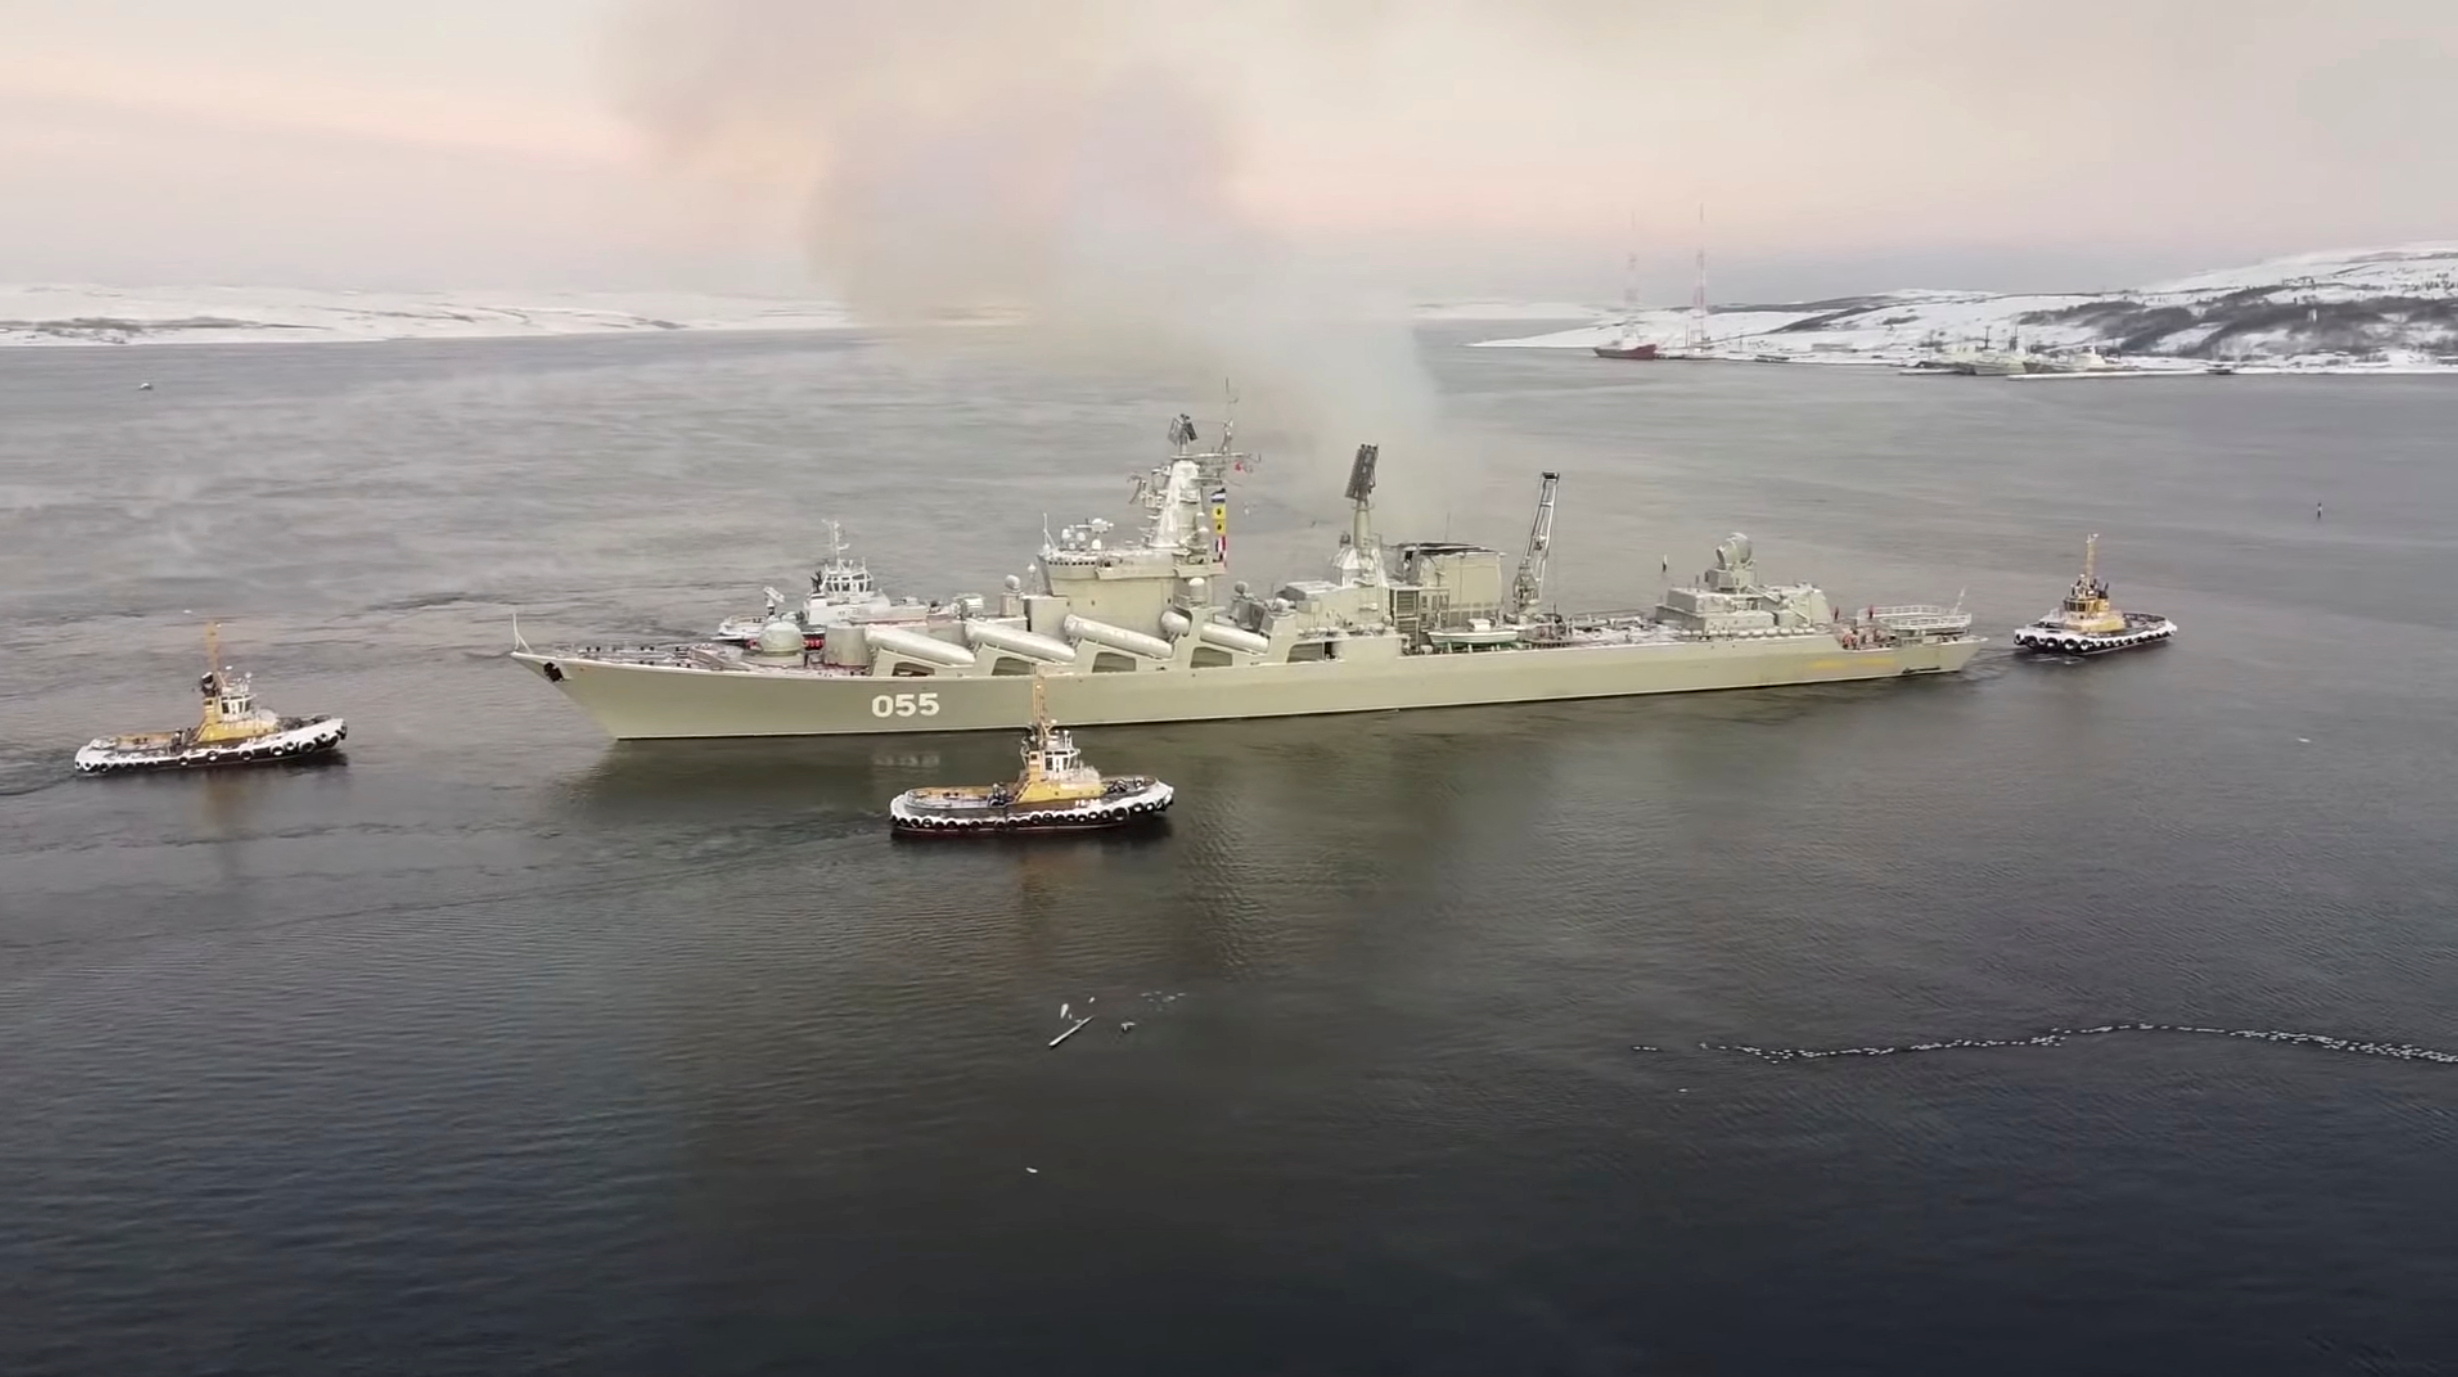 Barco militar ruso en el mar del norte
